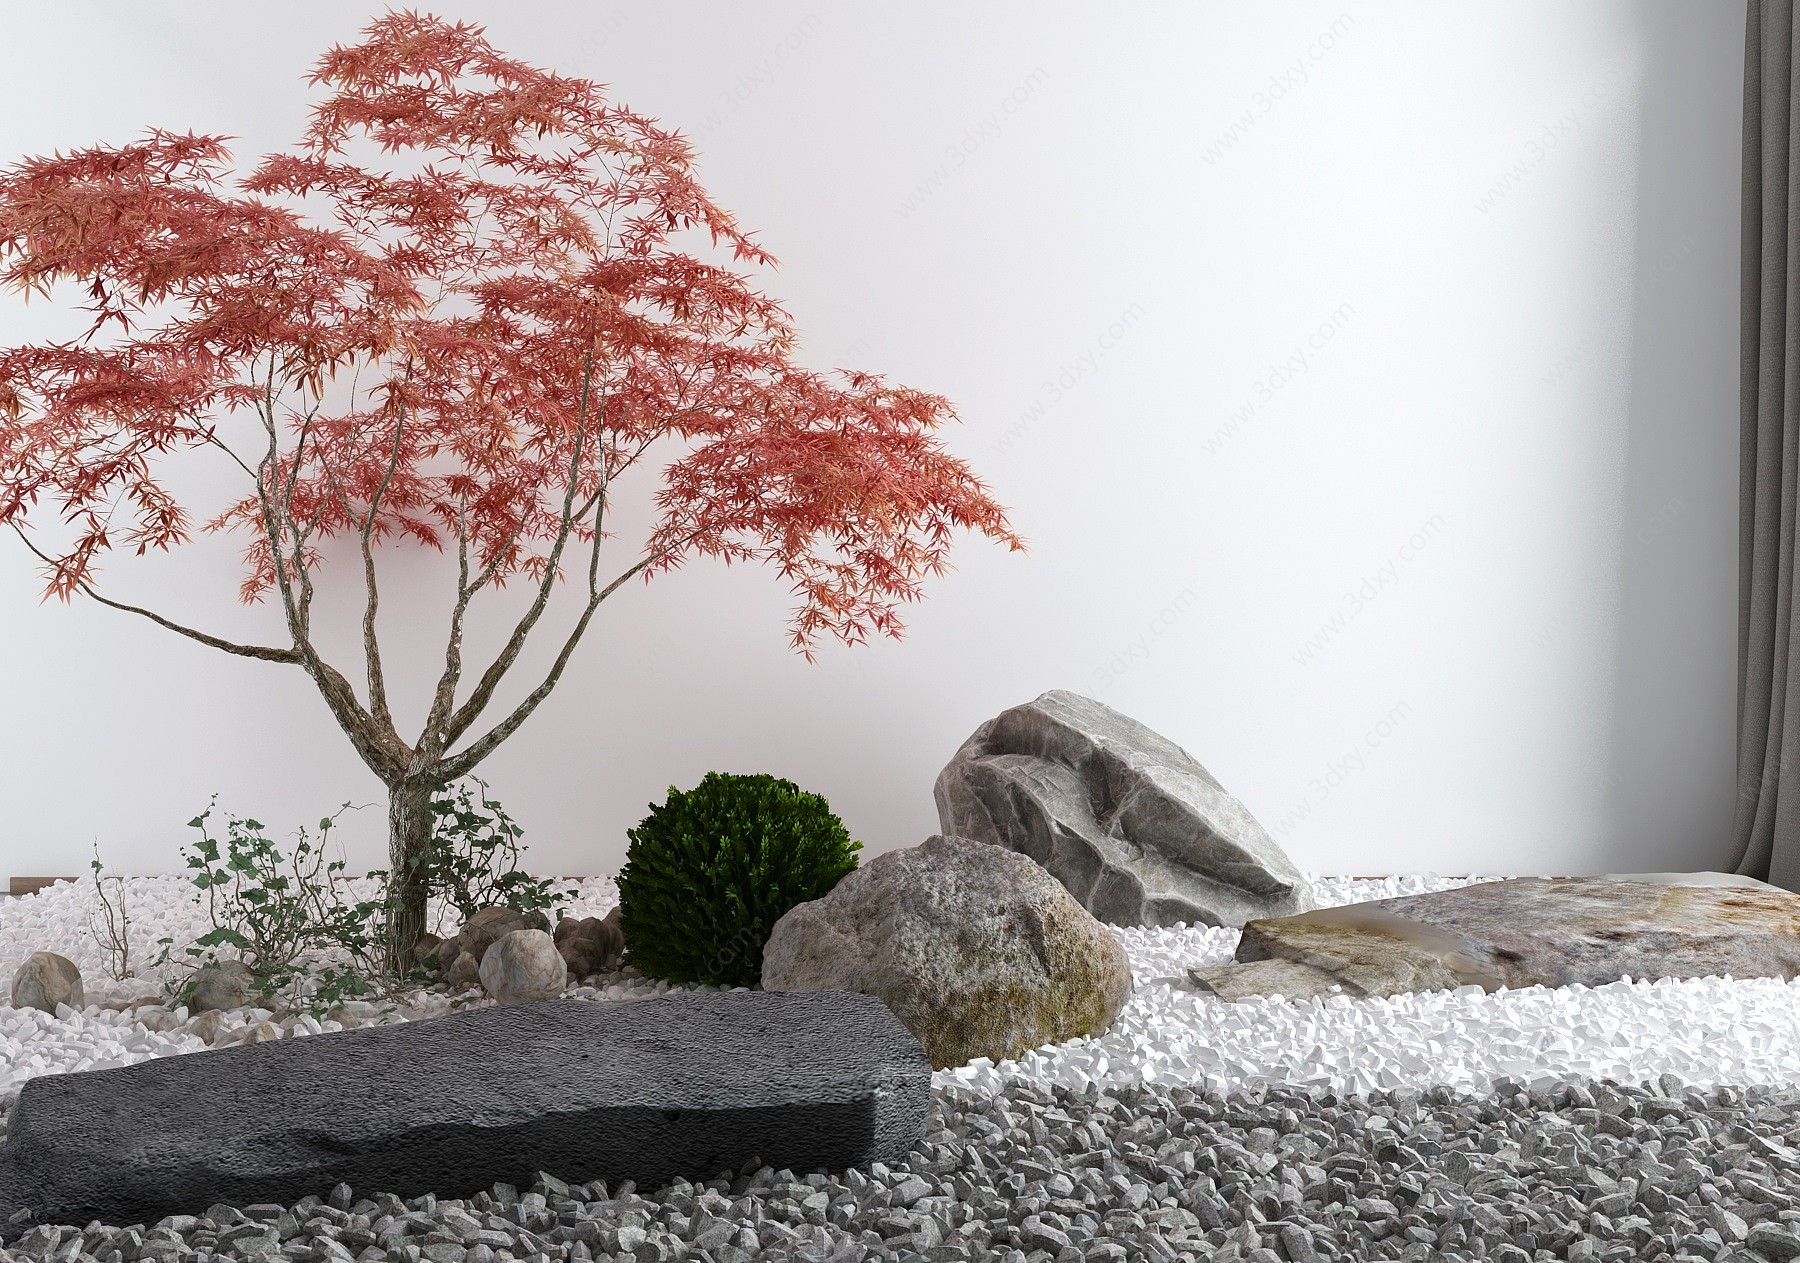 日式庭院景观小品3D模型